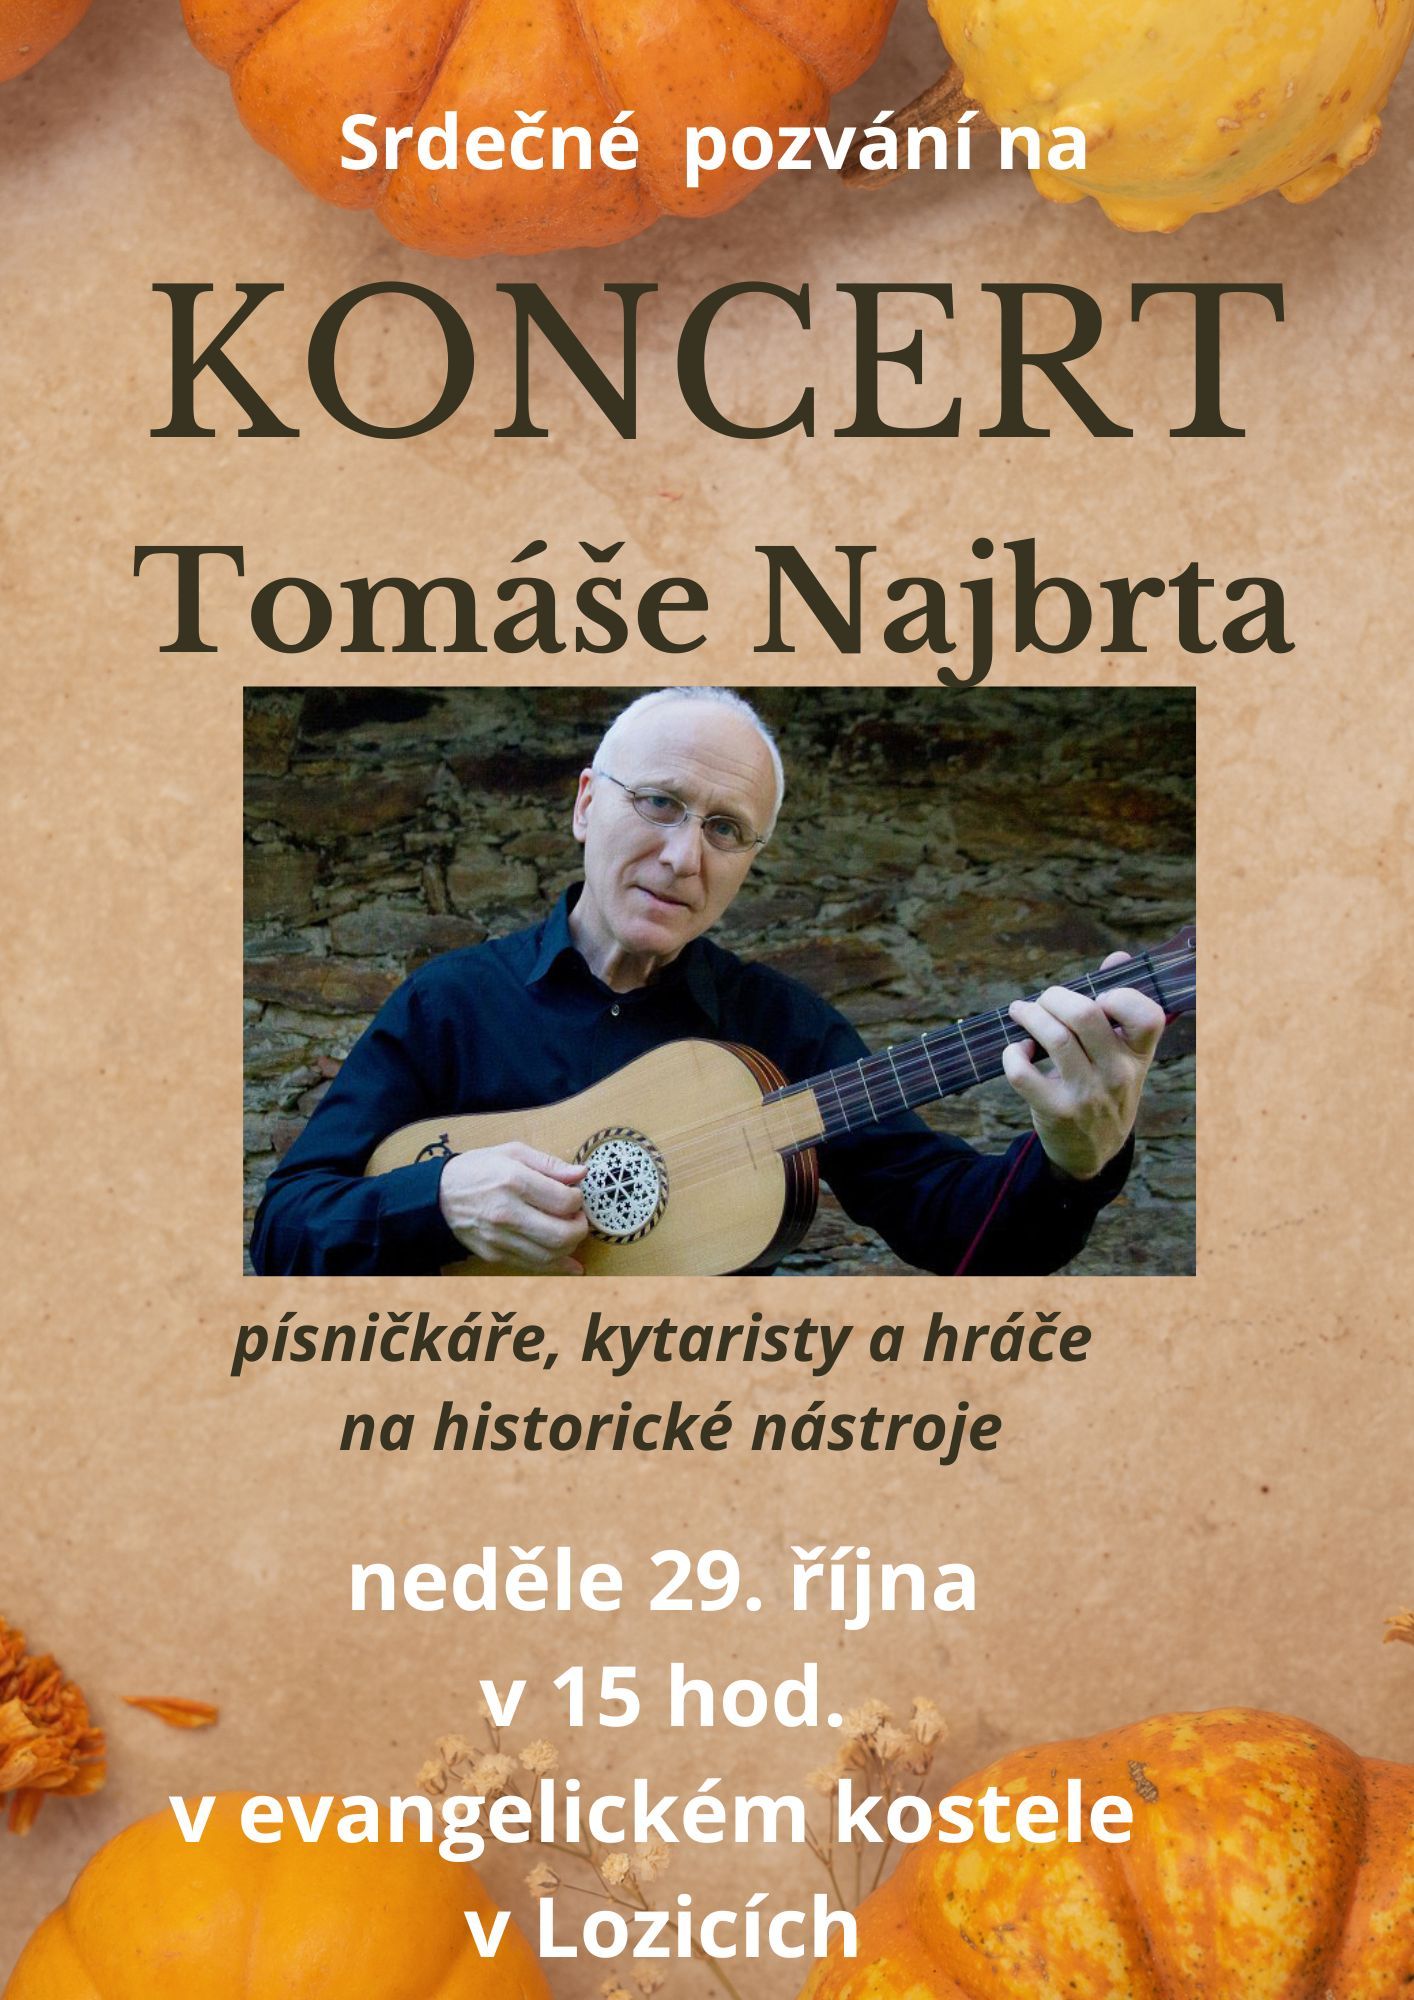 Pozvánka koncert Tomáše Najbrta v 15h